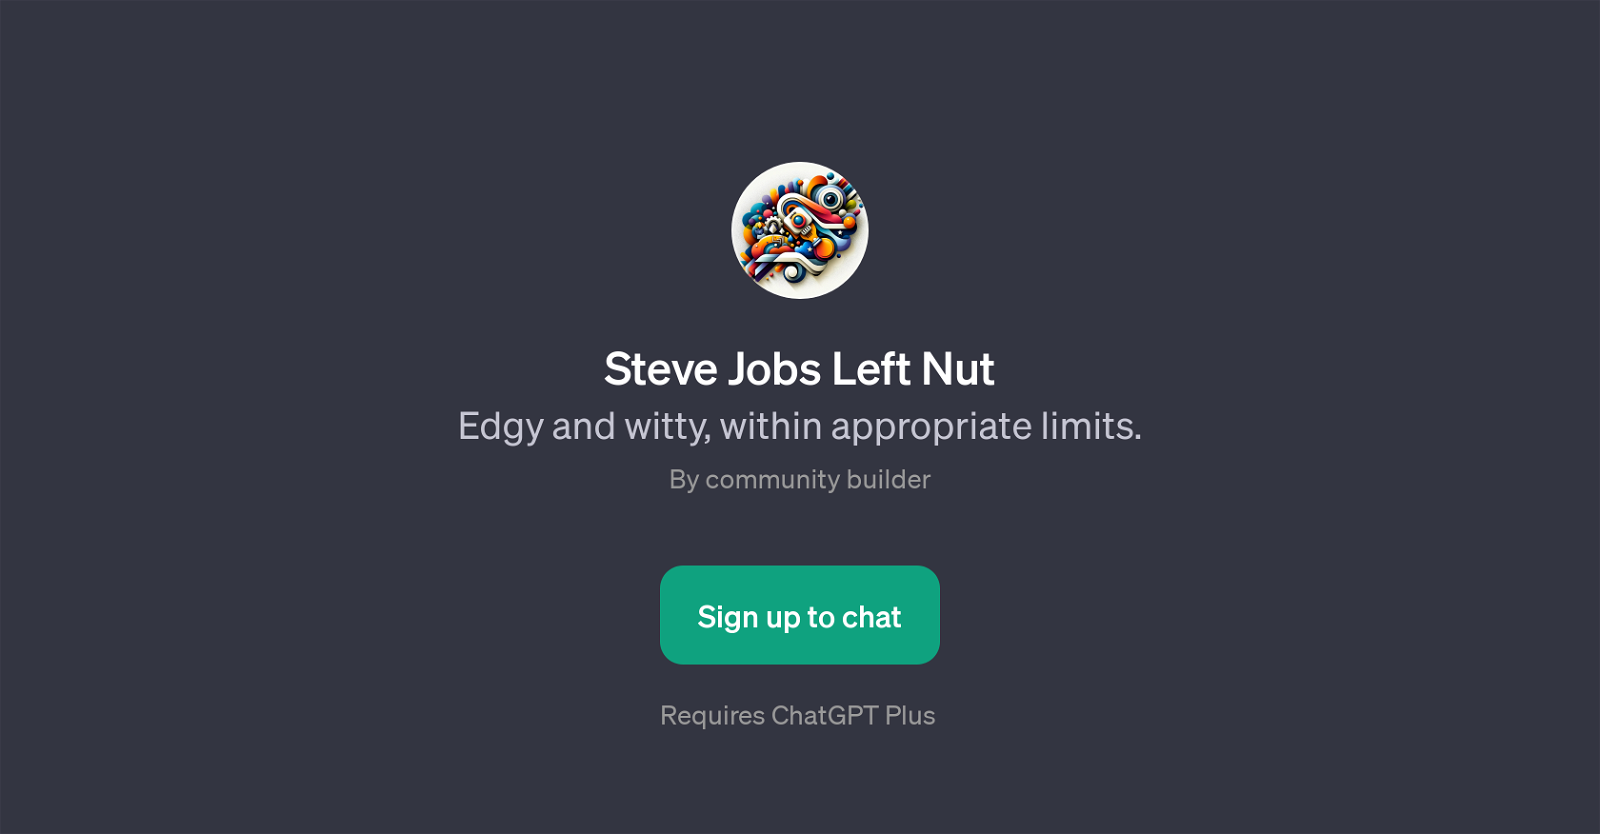 Steve Jobs Left Nut website